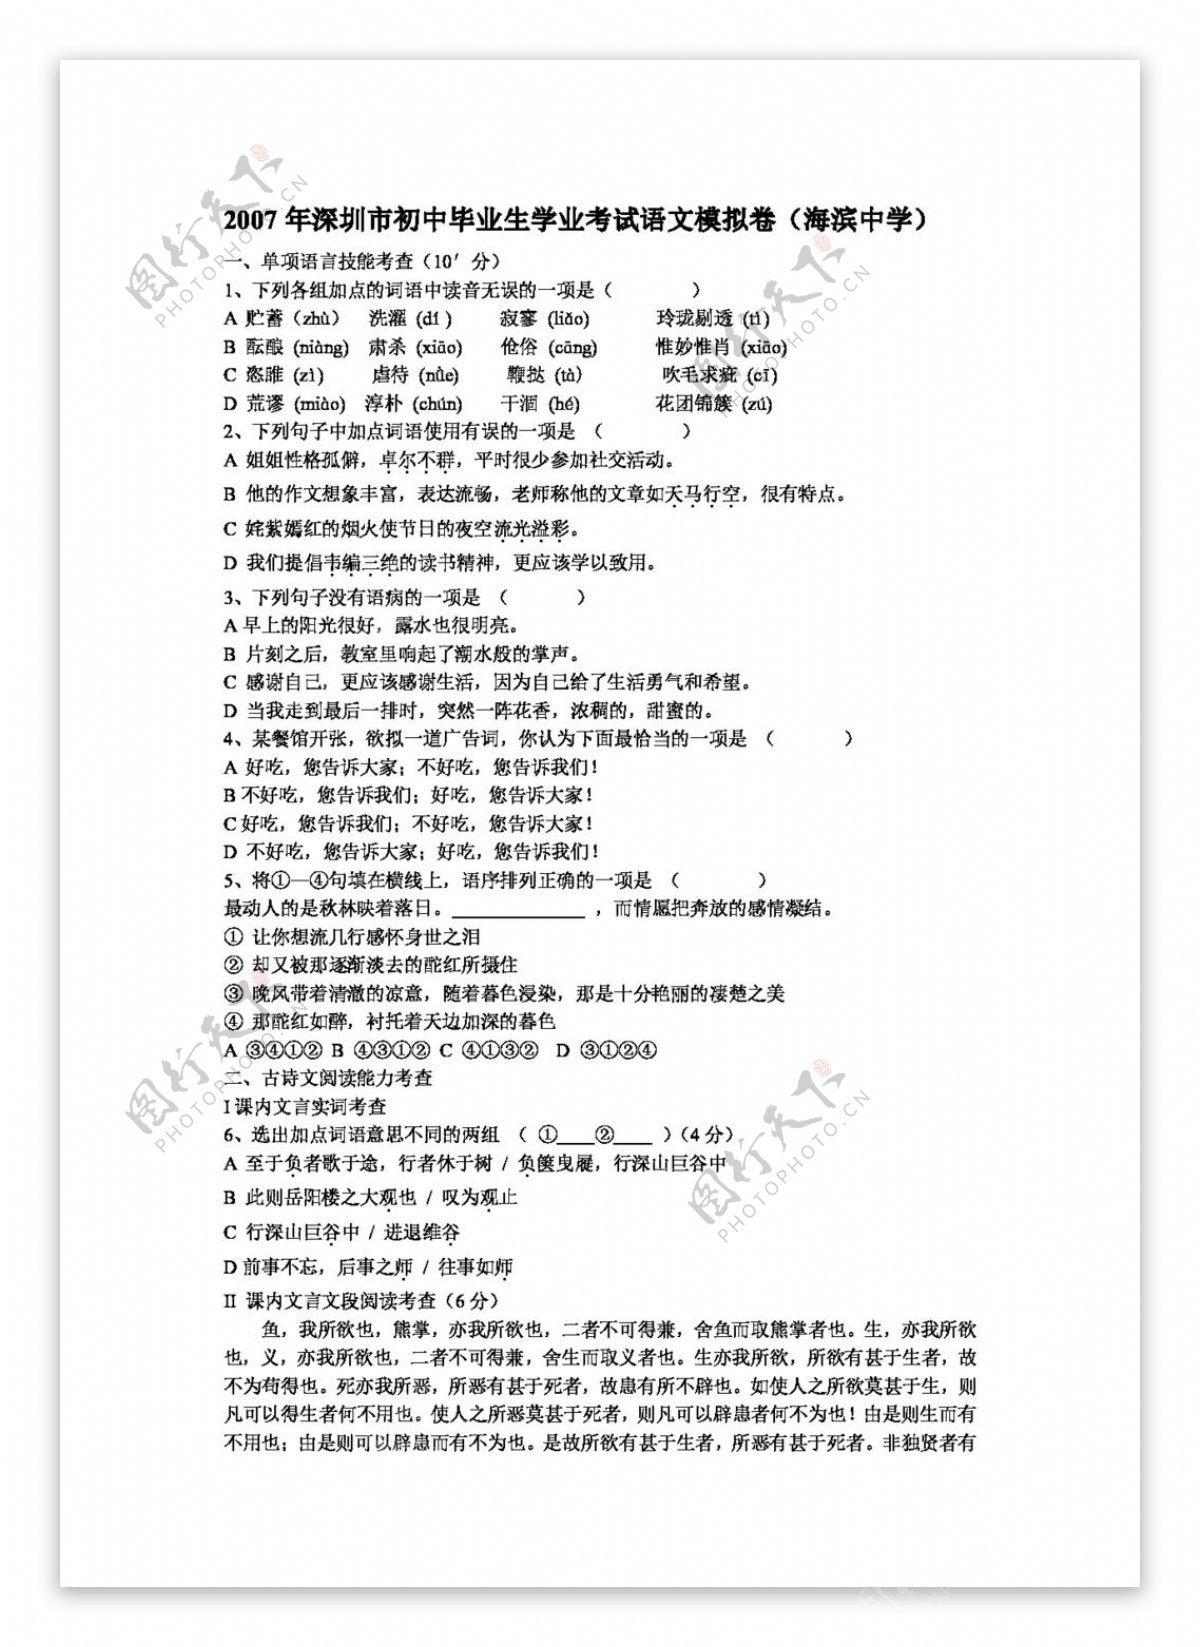 语文苏教版深圳市初中毕业生学业考试语文模拟卷